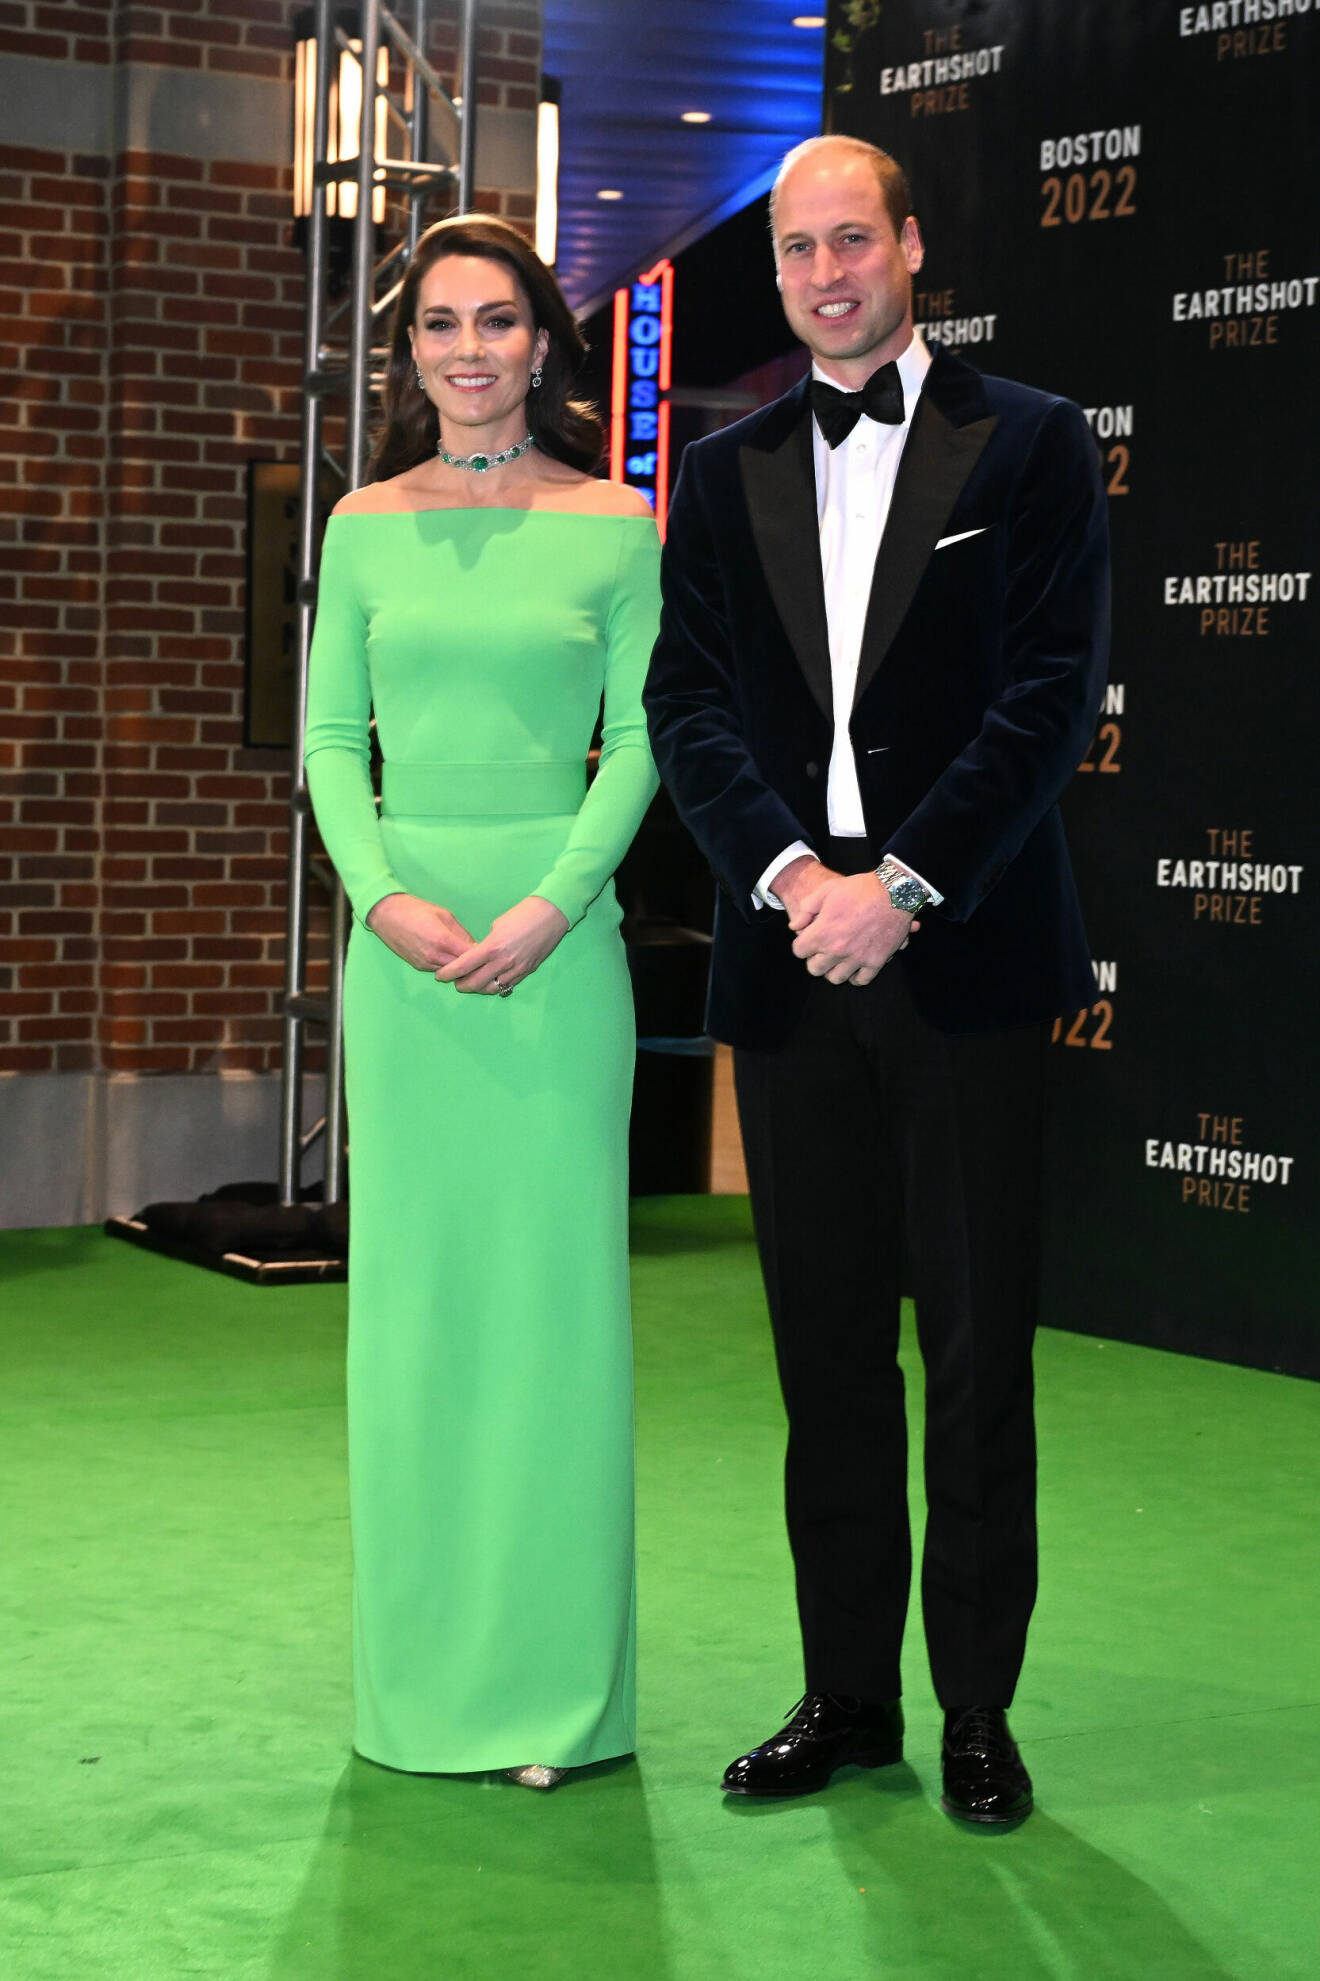 Prinsessan Kate och prins William på prisutdelningen av Earthshot Prize. Prinsessan Kate bär en grön klänning och prins William en mörkblå kostym i sammet.